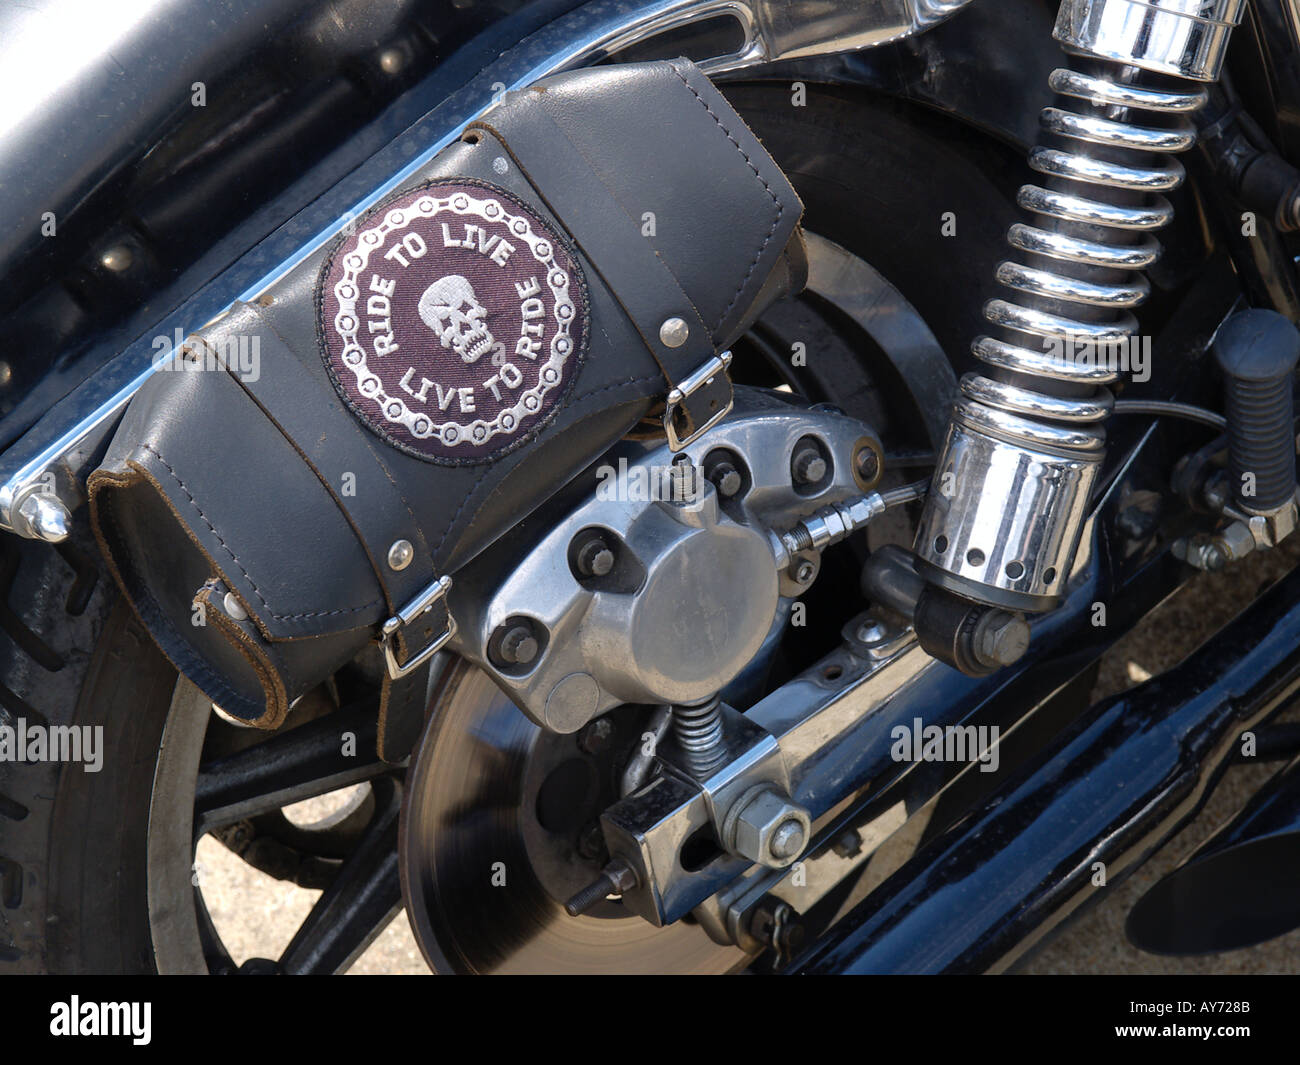 Hinten ein Harley Davidson Motorrad mit Leder Toolroll mit Fahrt zum Leben, Motto und kleinen Schädel zu fahren Stockfoto